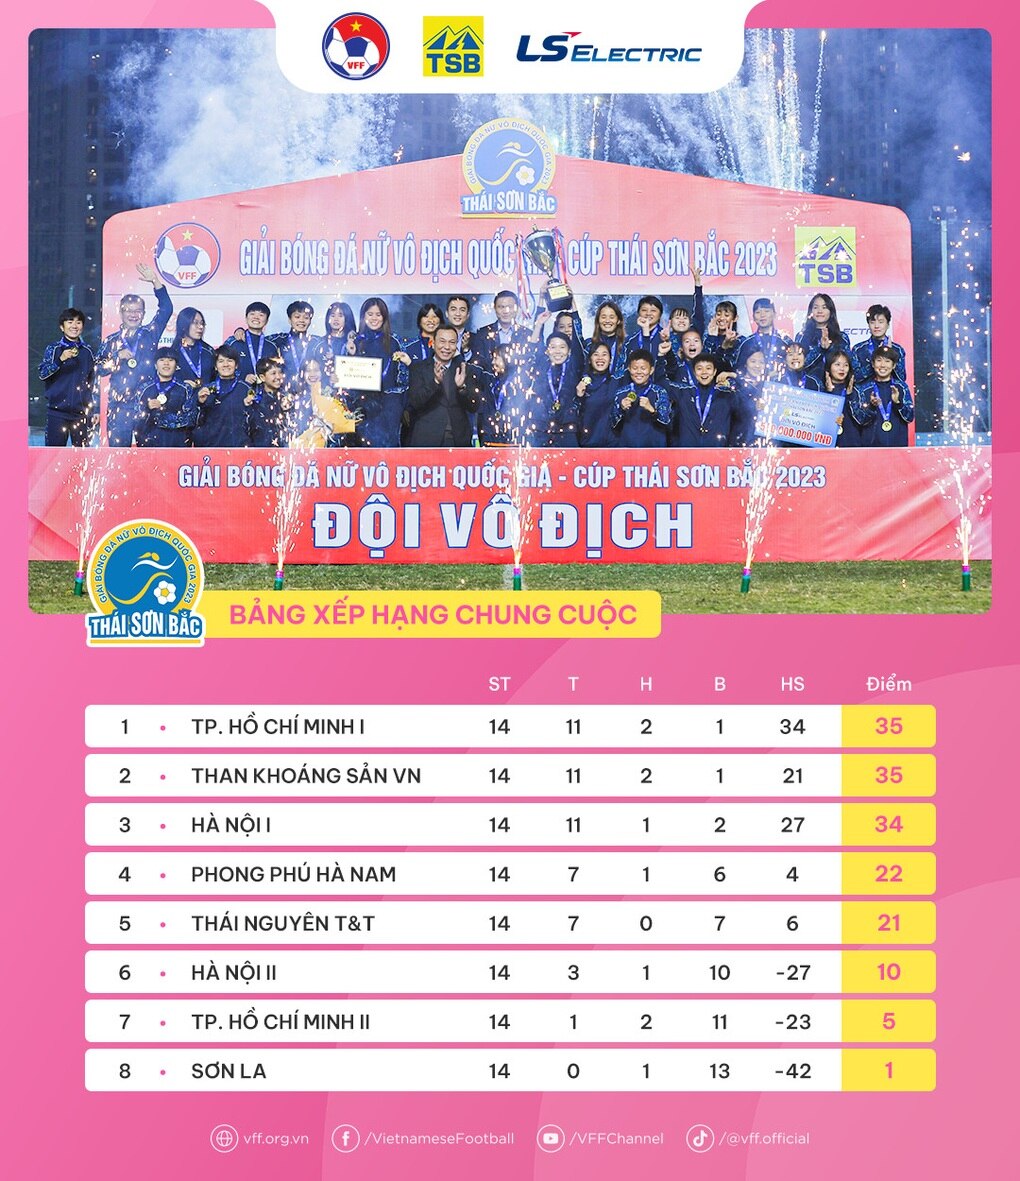 Bích Thùy tỏa sáng giúp đội nhà vô địch giải bóng đá nữ quốc gia 2023 - 4